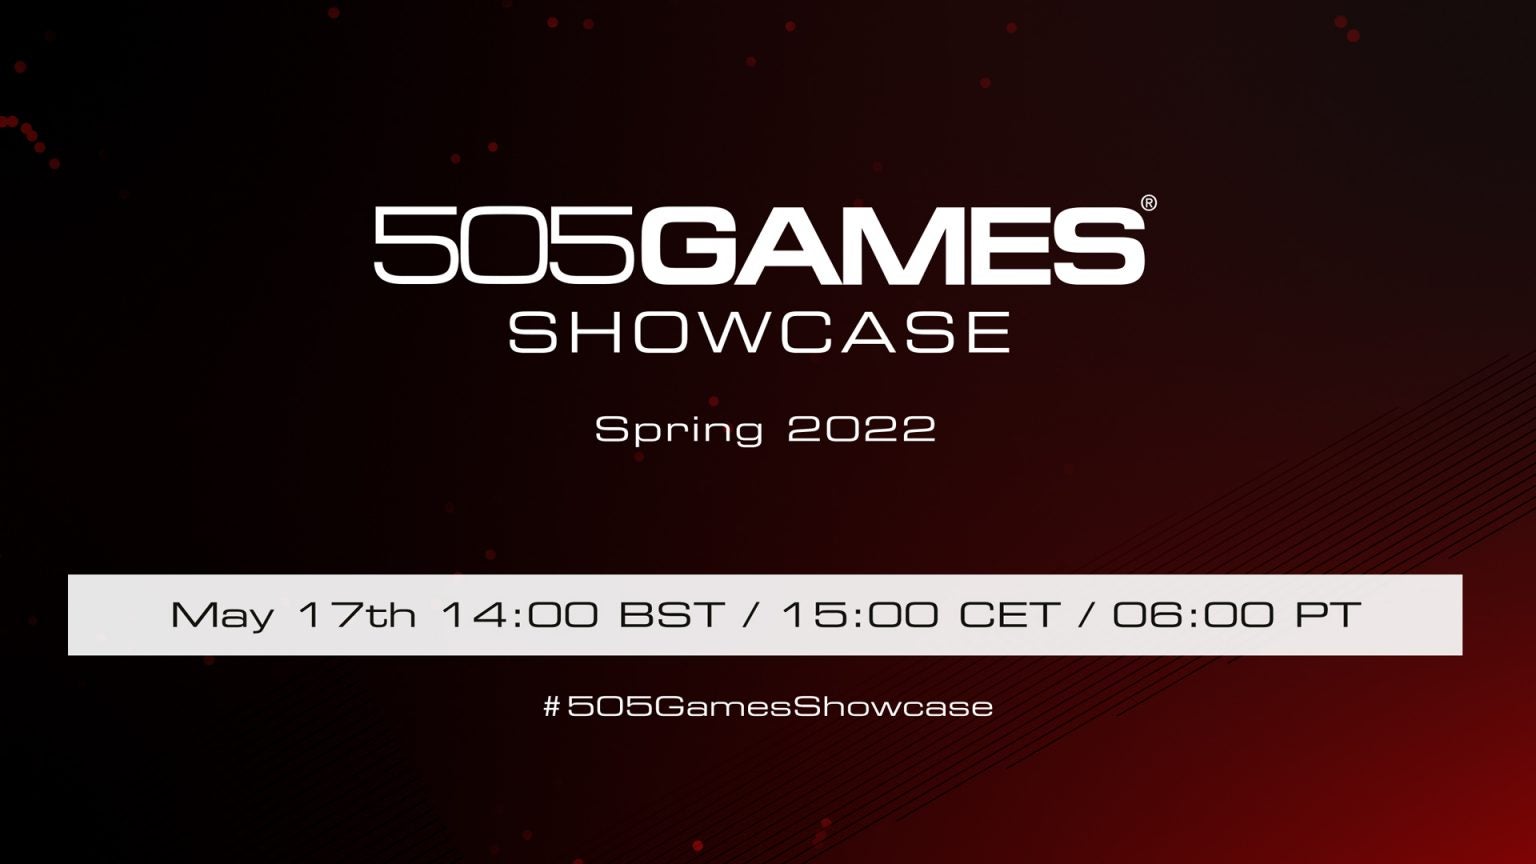 Imagen para 505 Games emitirá una presentación digital la próxima semana